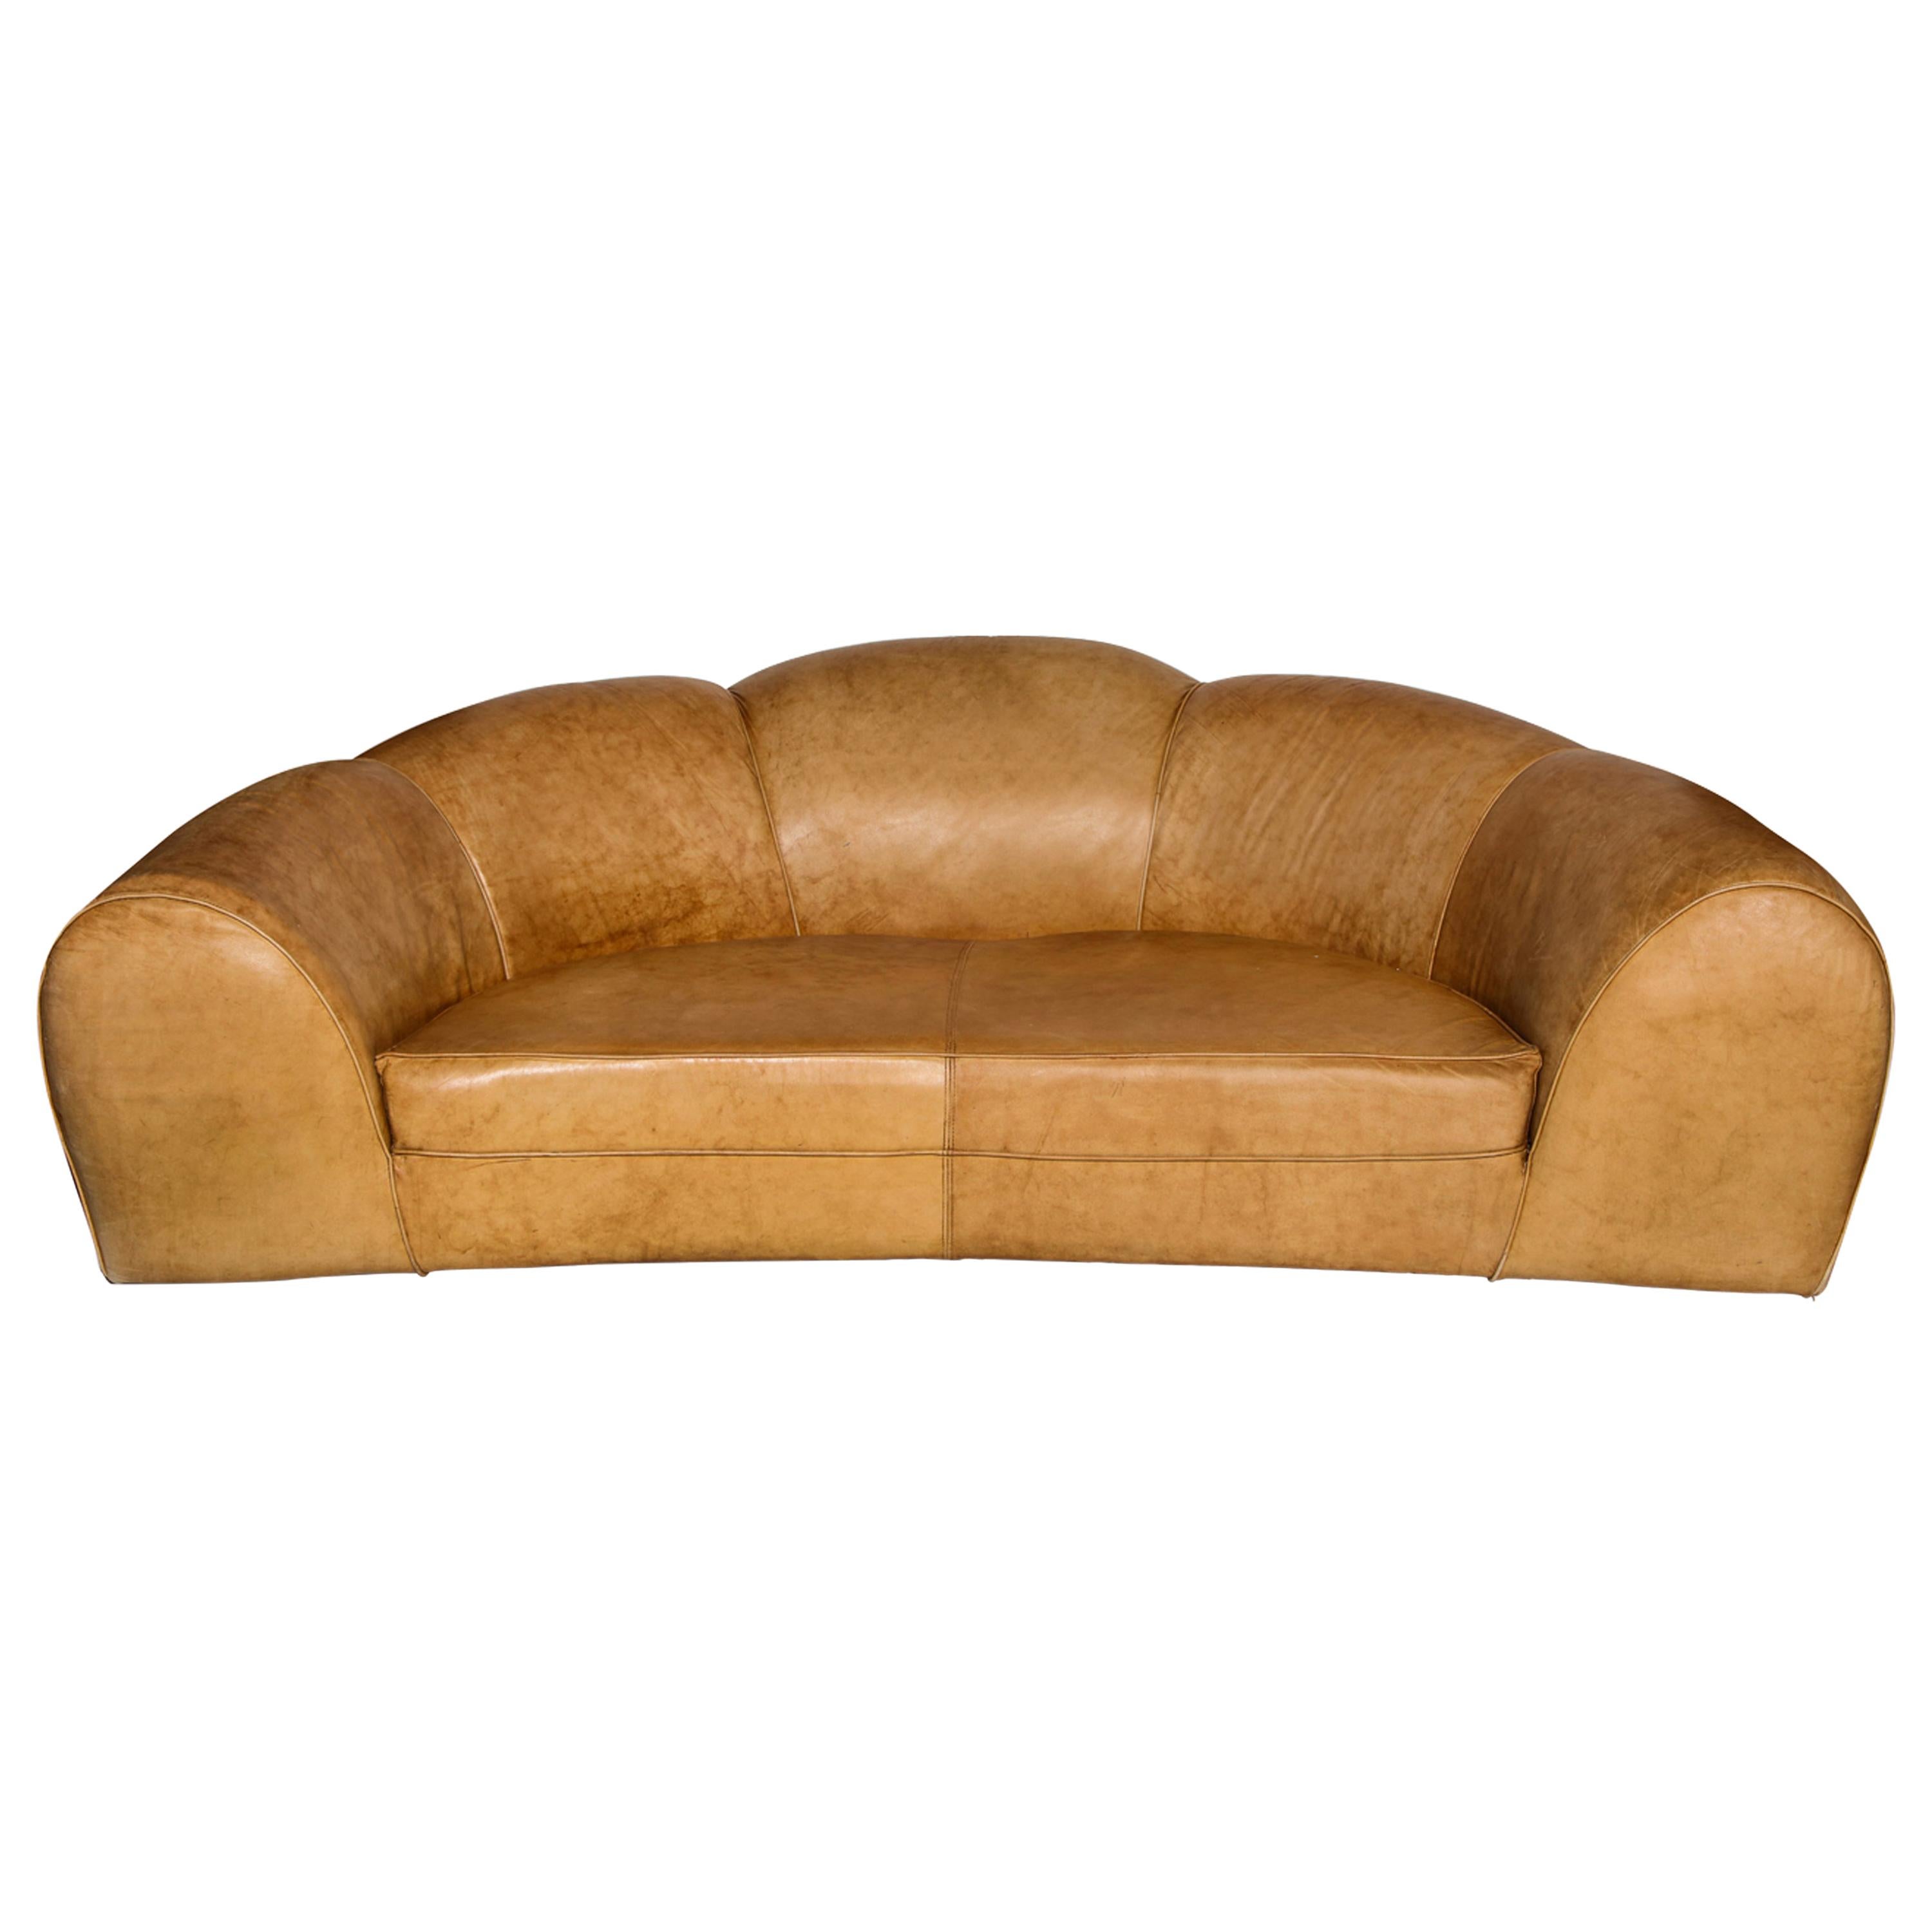 Polar Bear Monumental Cresent Brown Leather Sofa, France